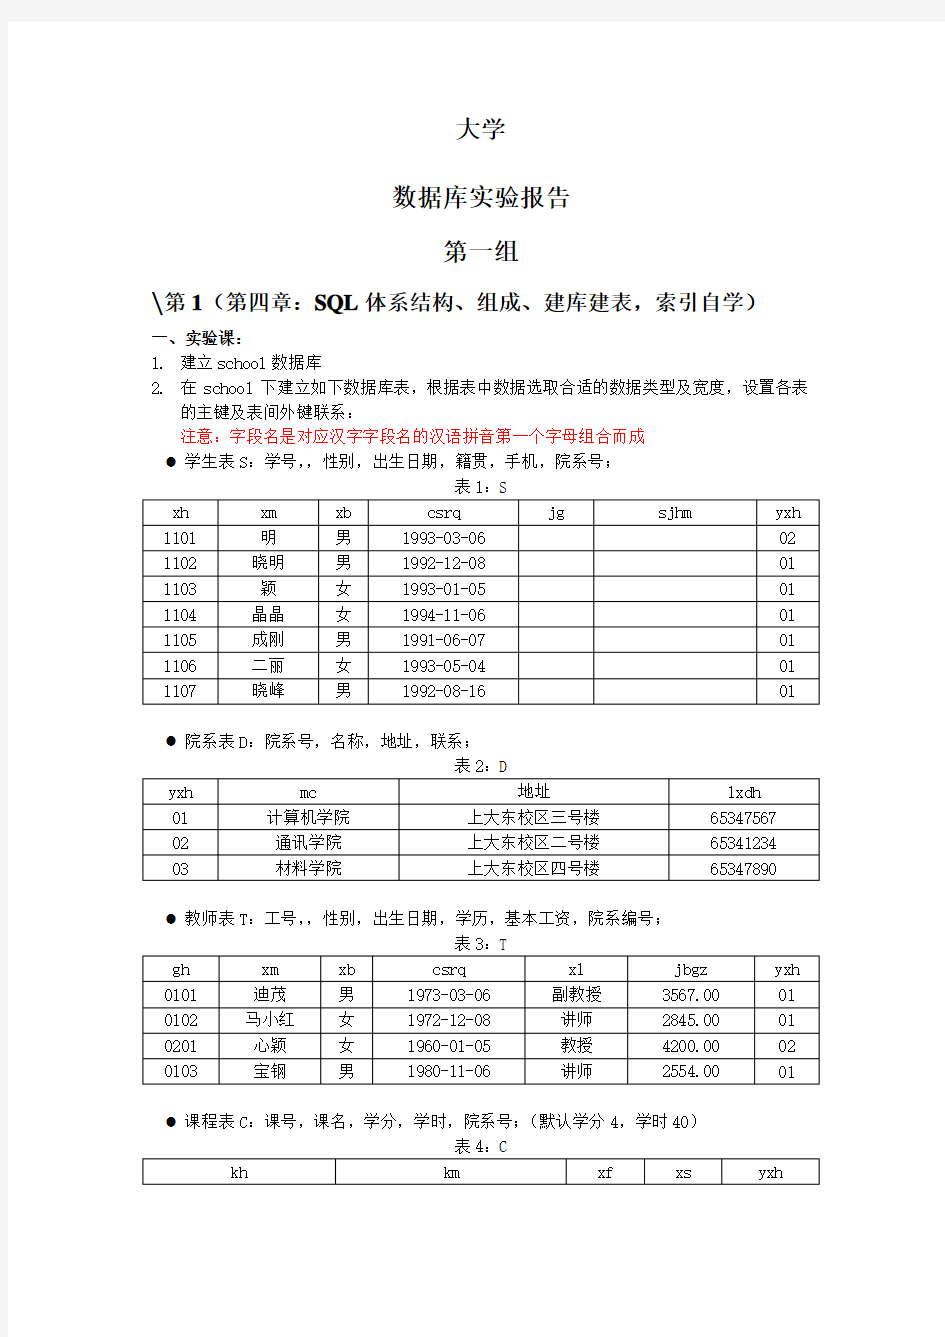 上海大学数据库实验报告